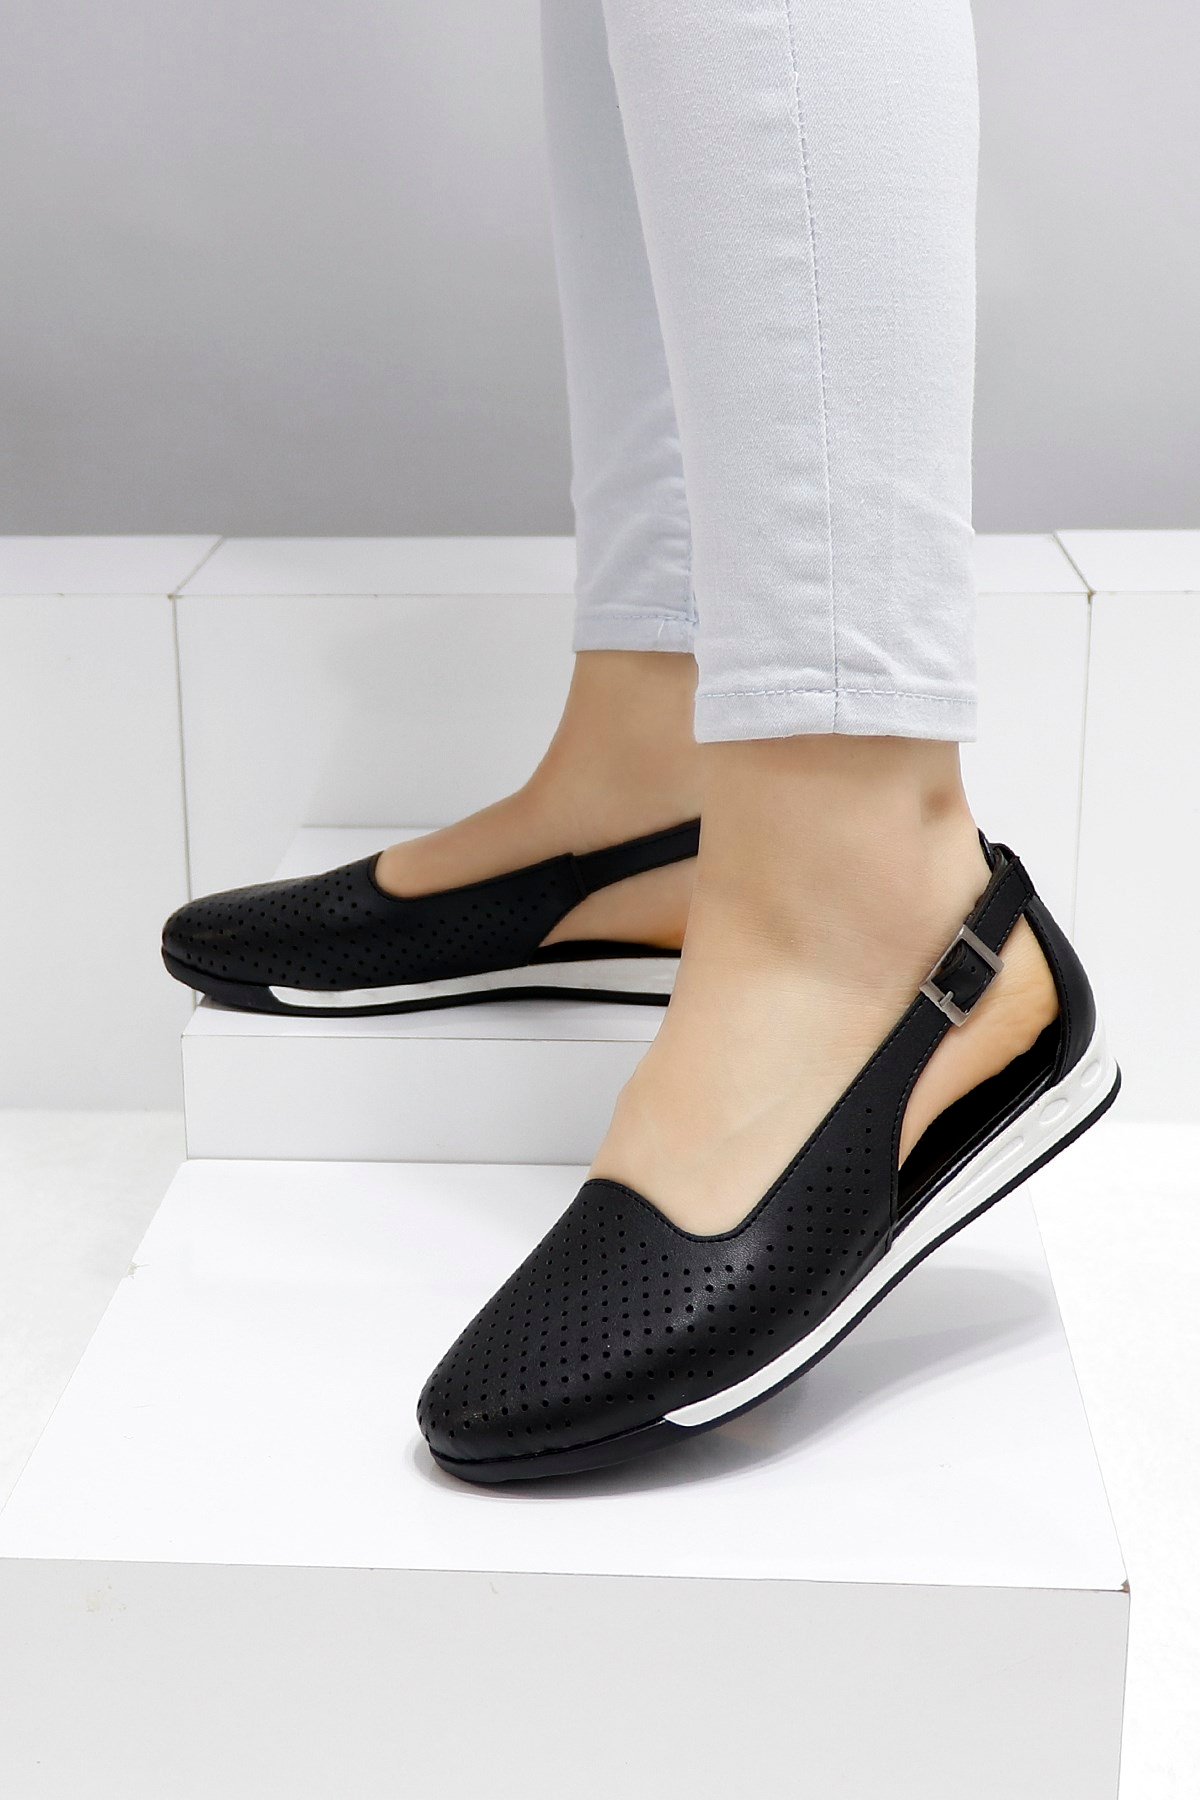 Siyah Düz Taban Kadın Babet Ayakkabı 221 Fiyatı ve Modelleri